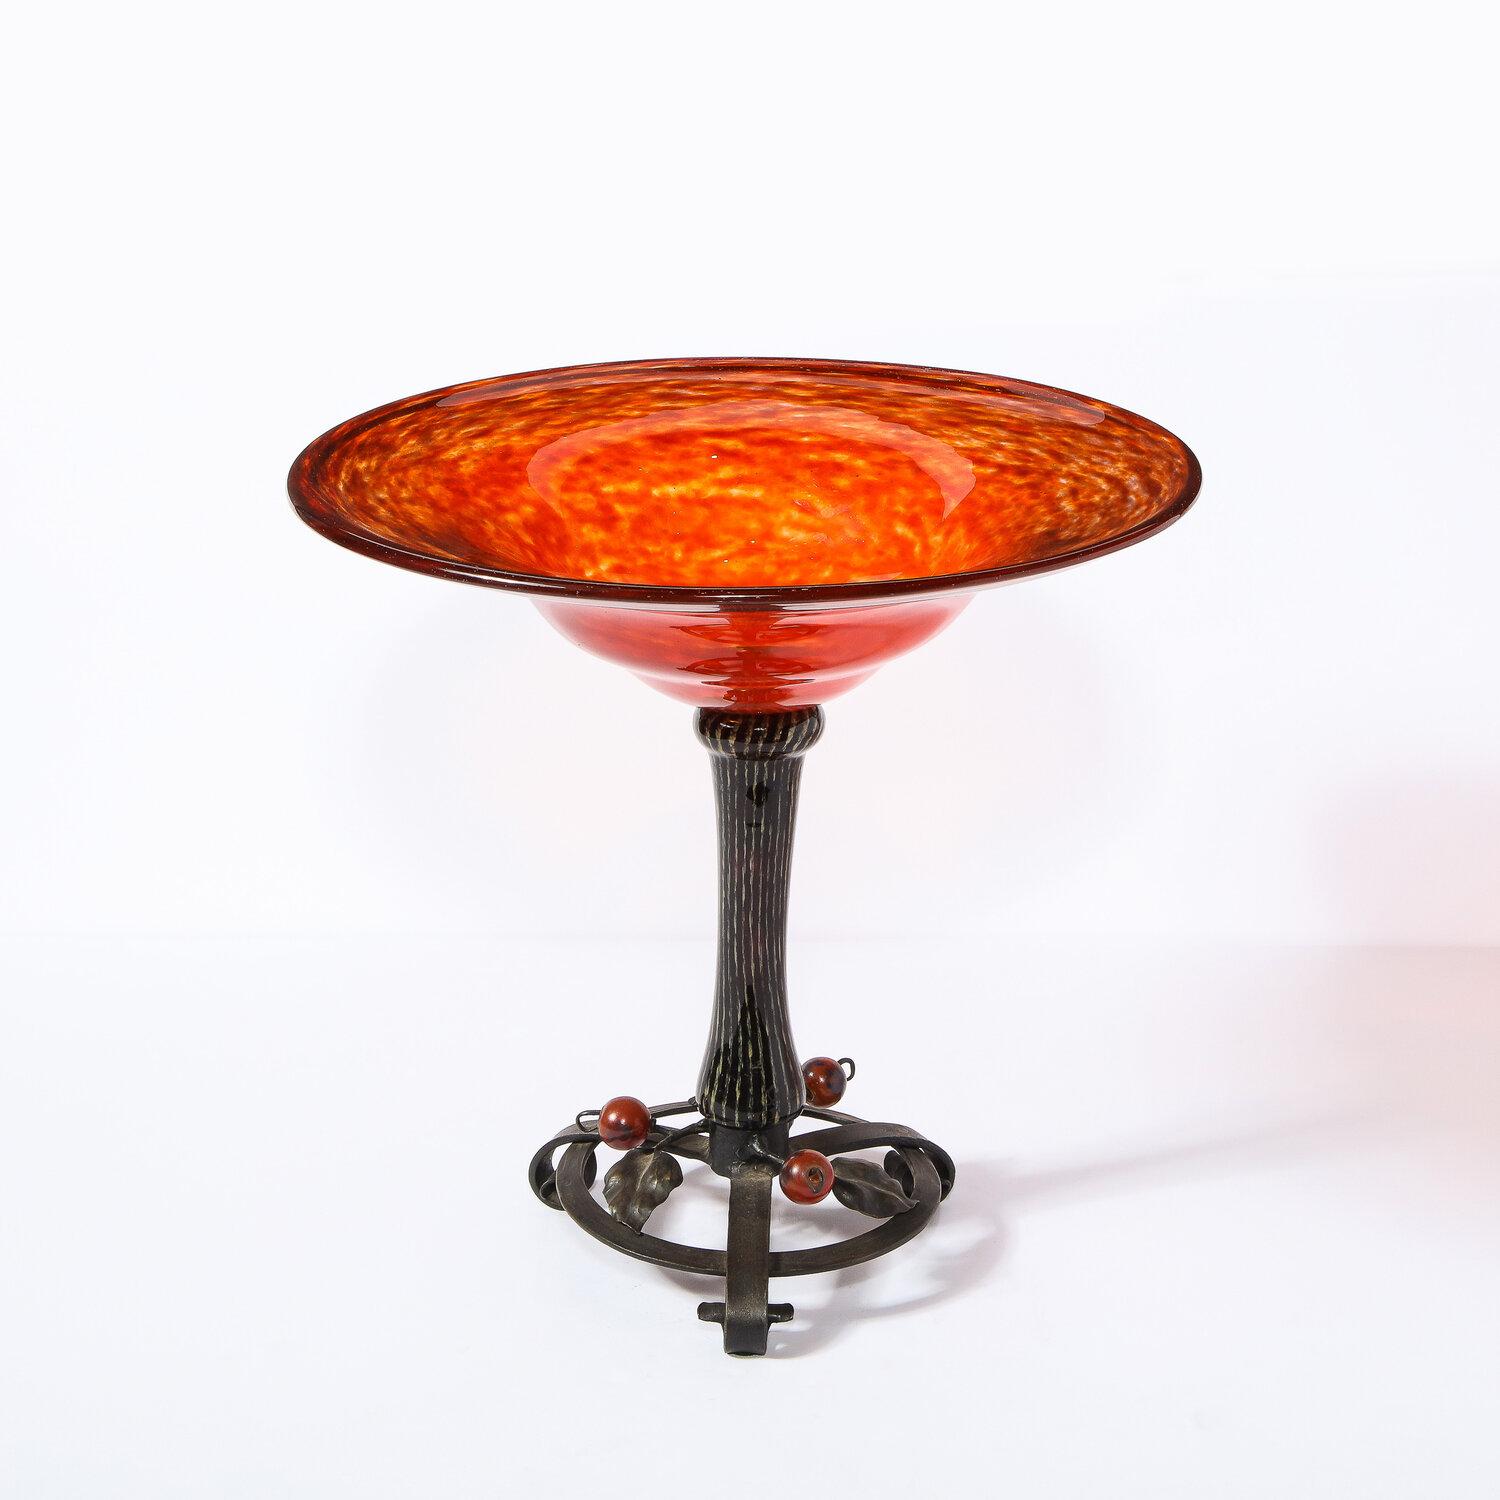 Ce bol sophistiqué de style Art déco a été réalisé et signé par Charles Schneider en France vers 1920. Elle présente un plateau en verre tacheté de cornaline et une base en fer forgé ornée d'ornements sphériques rubis et de détails feuillagés